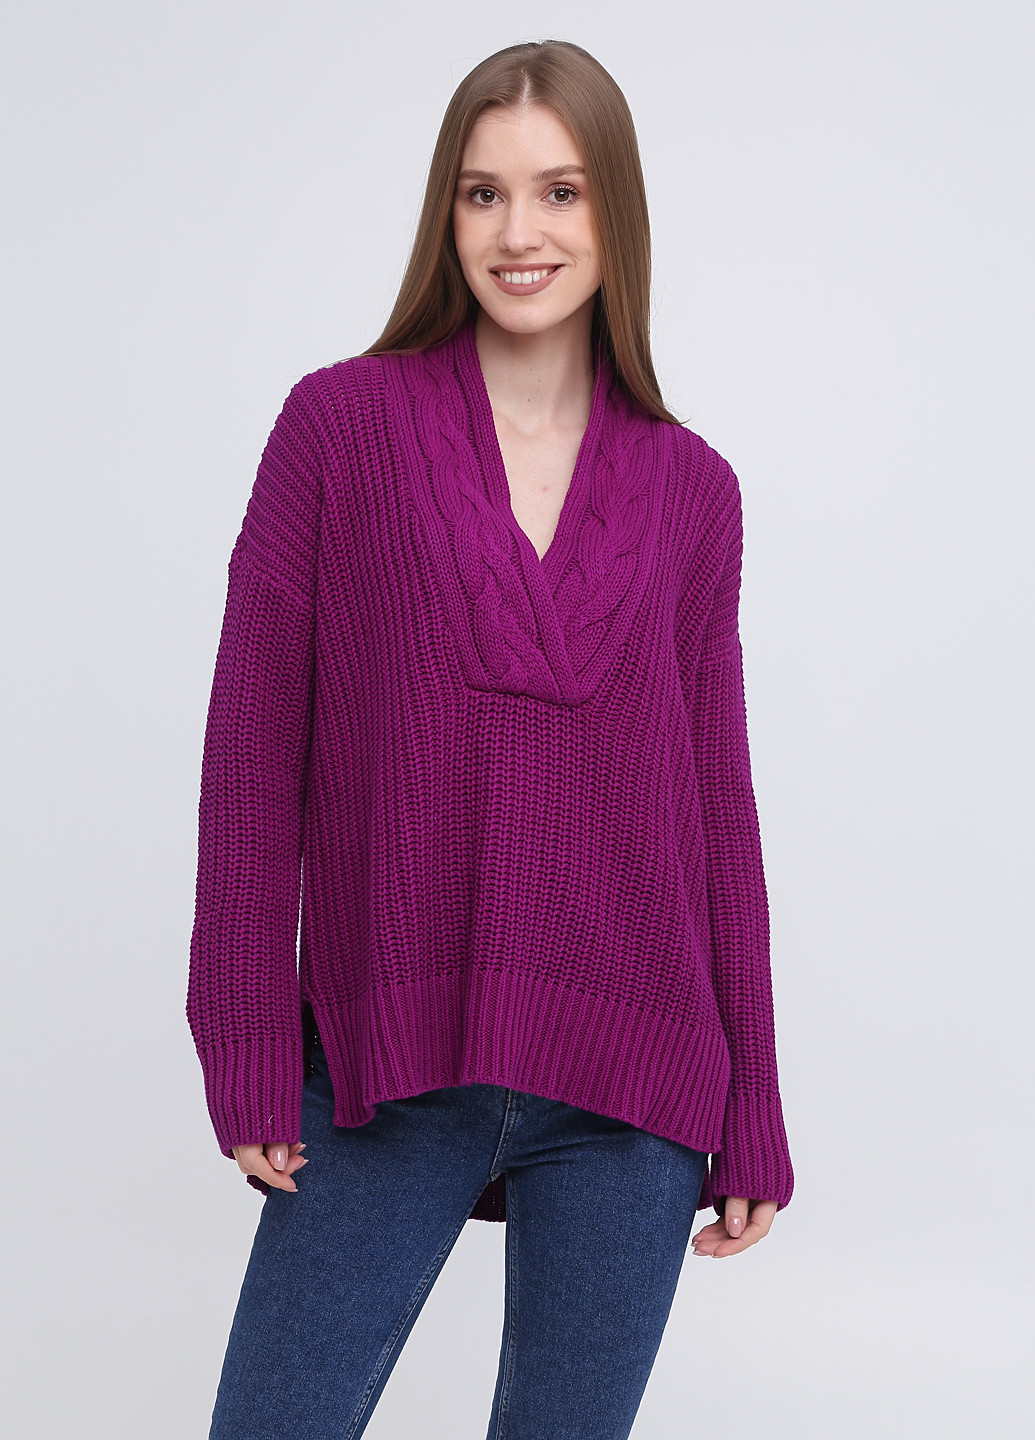 Фиолетовый демисезонный пуловер пуловер Ralph Lauren